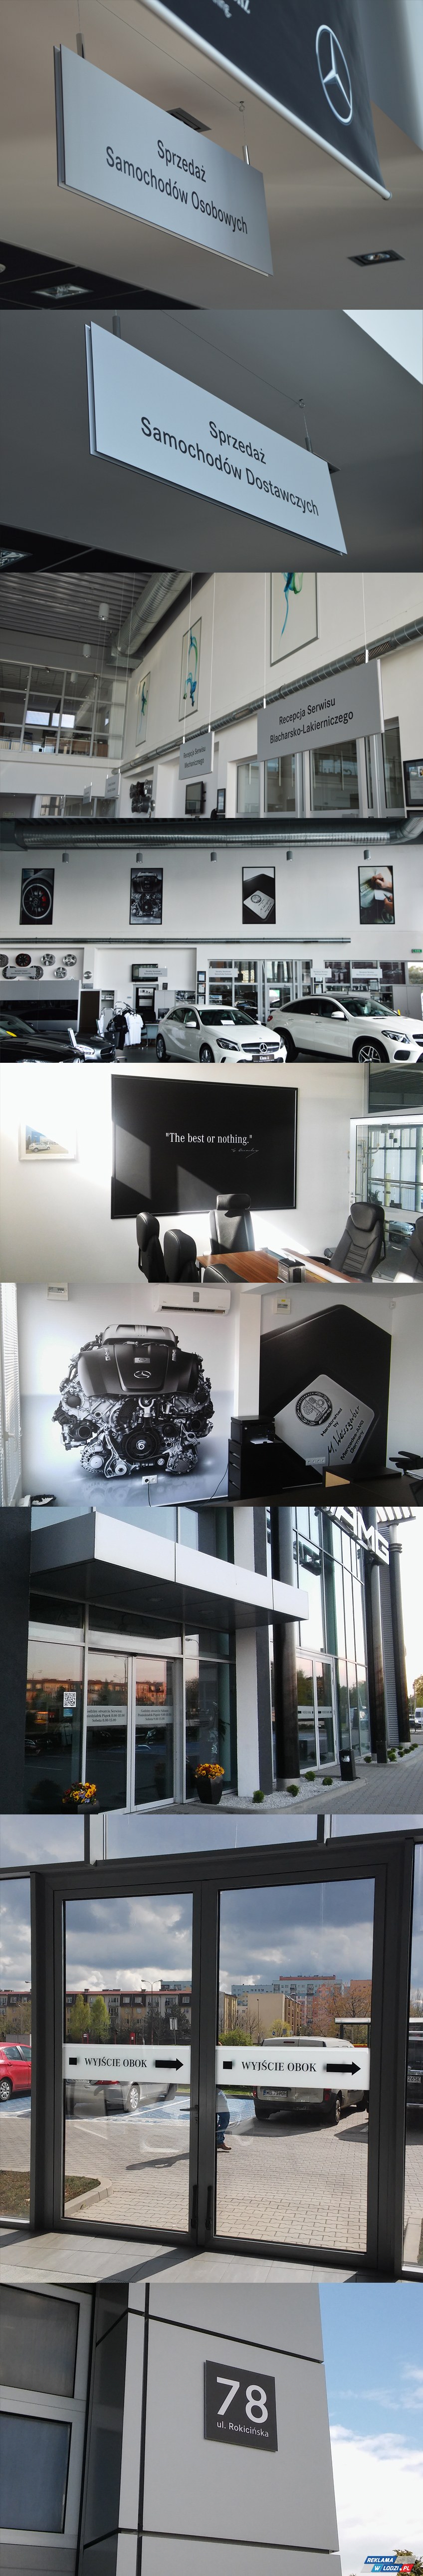 Dla Auto Studio Mercedes Benz wykonaliśmy i zamontowaliśmy kompletny system oznakowania zewnętrznego i wewnętrznego, który obejmował m.in. oznakowanie stanowisk i działów w budynku, oznakowania kierunkowe i informacyjne na szybach, fototapety i grafiki na ścianach i szyldy na elewacji budynku.